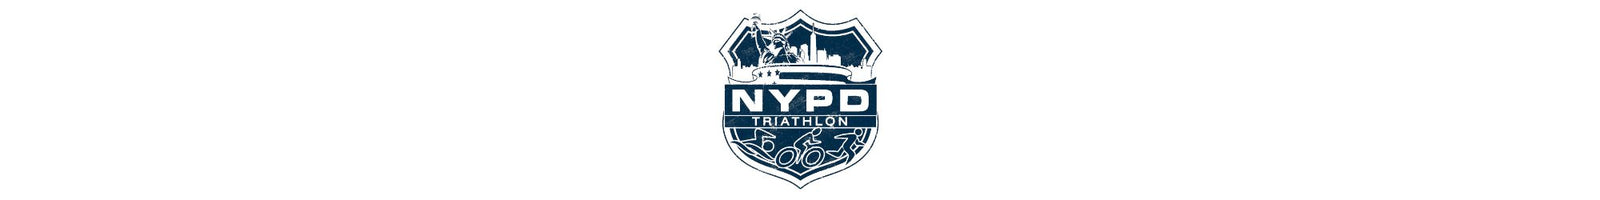 NYPD Triathlon Gear